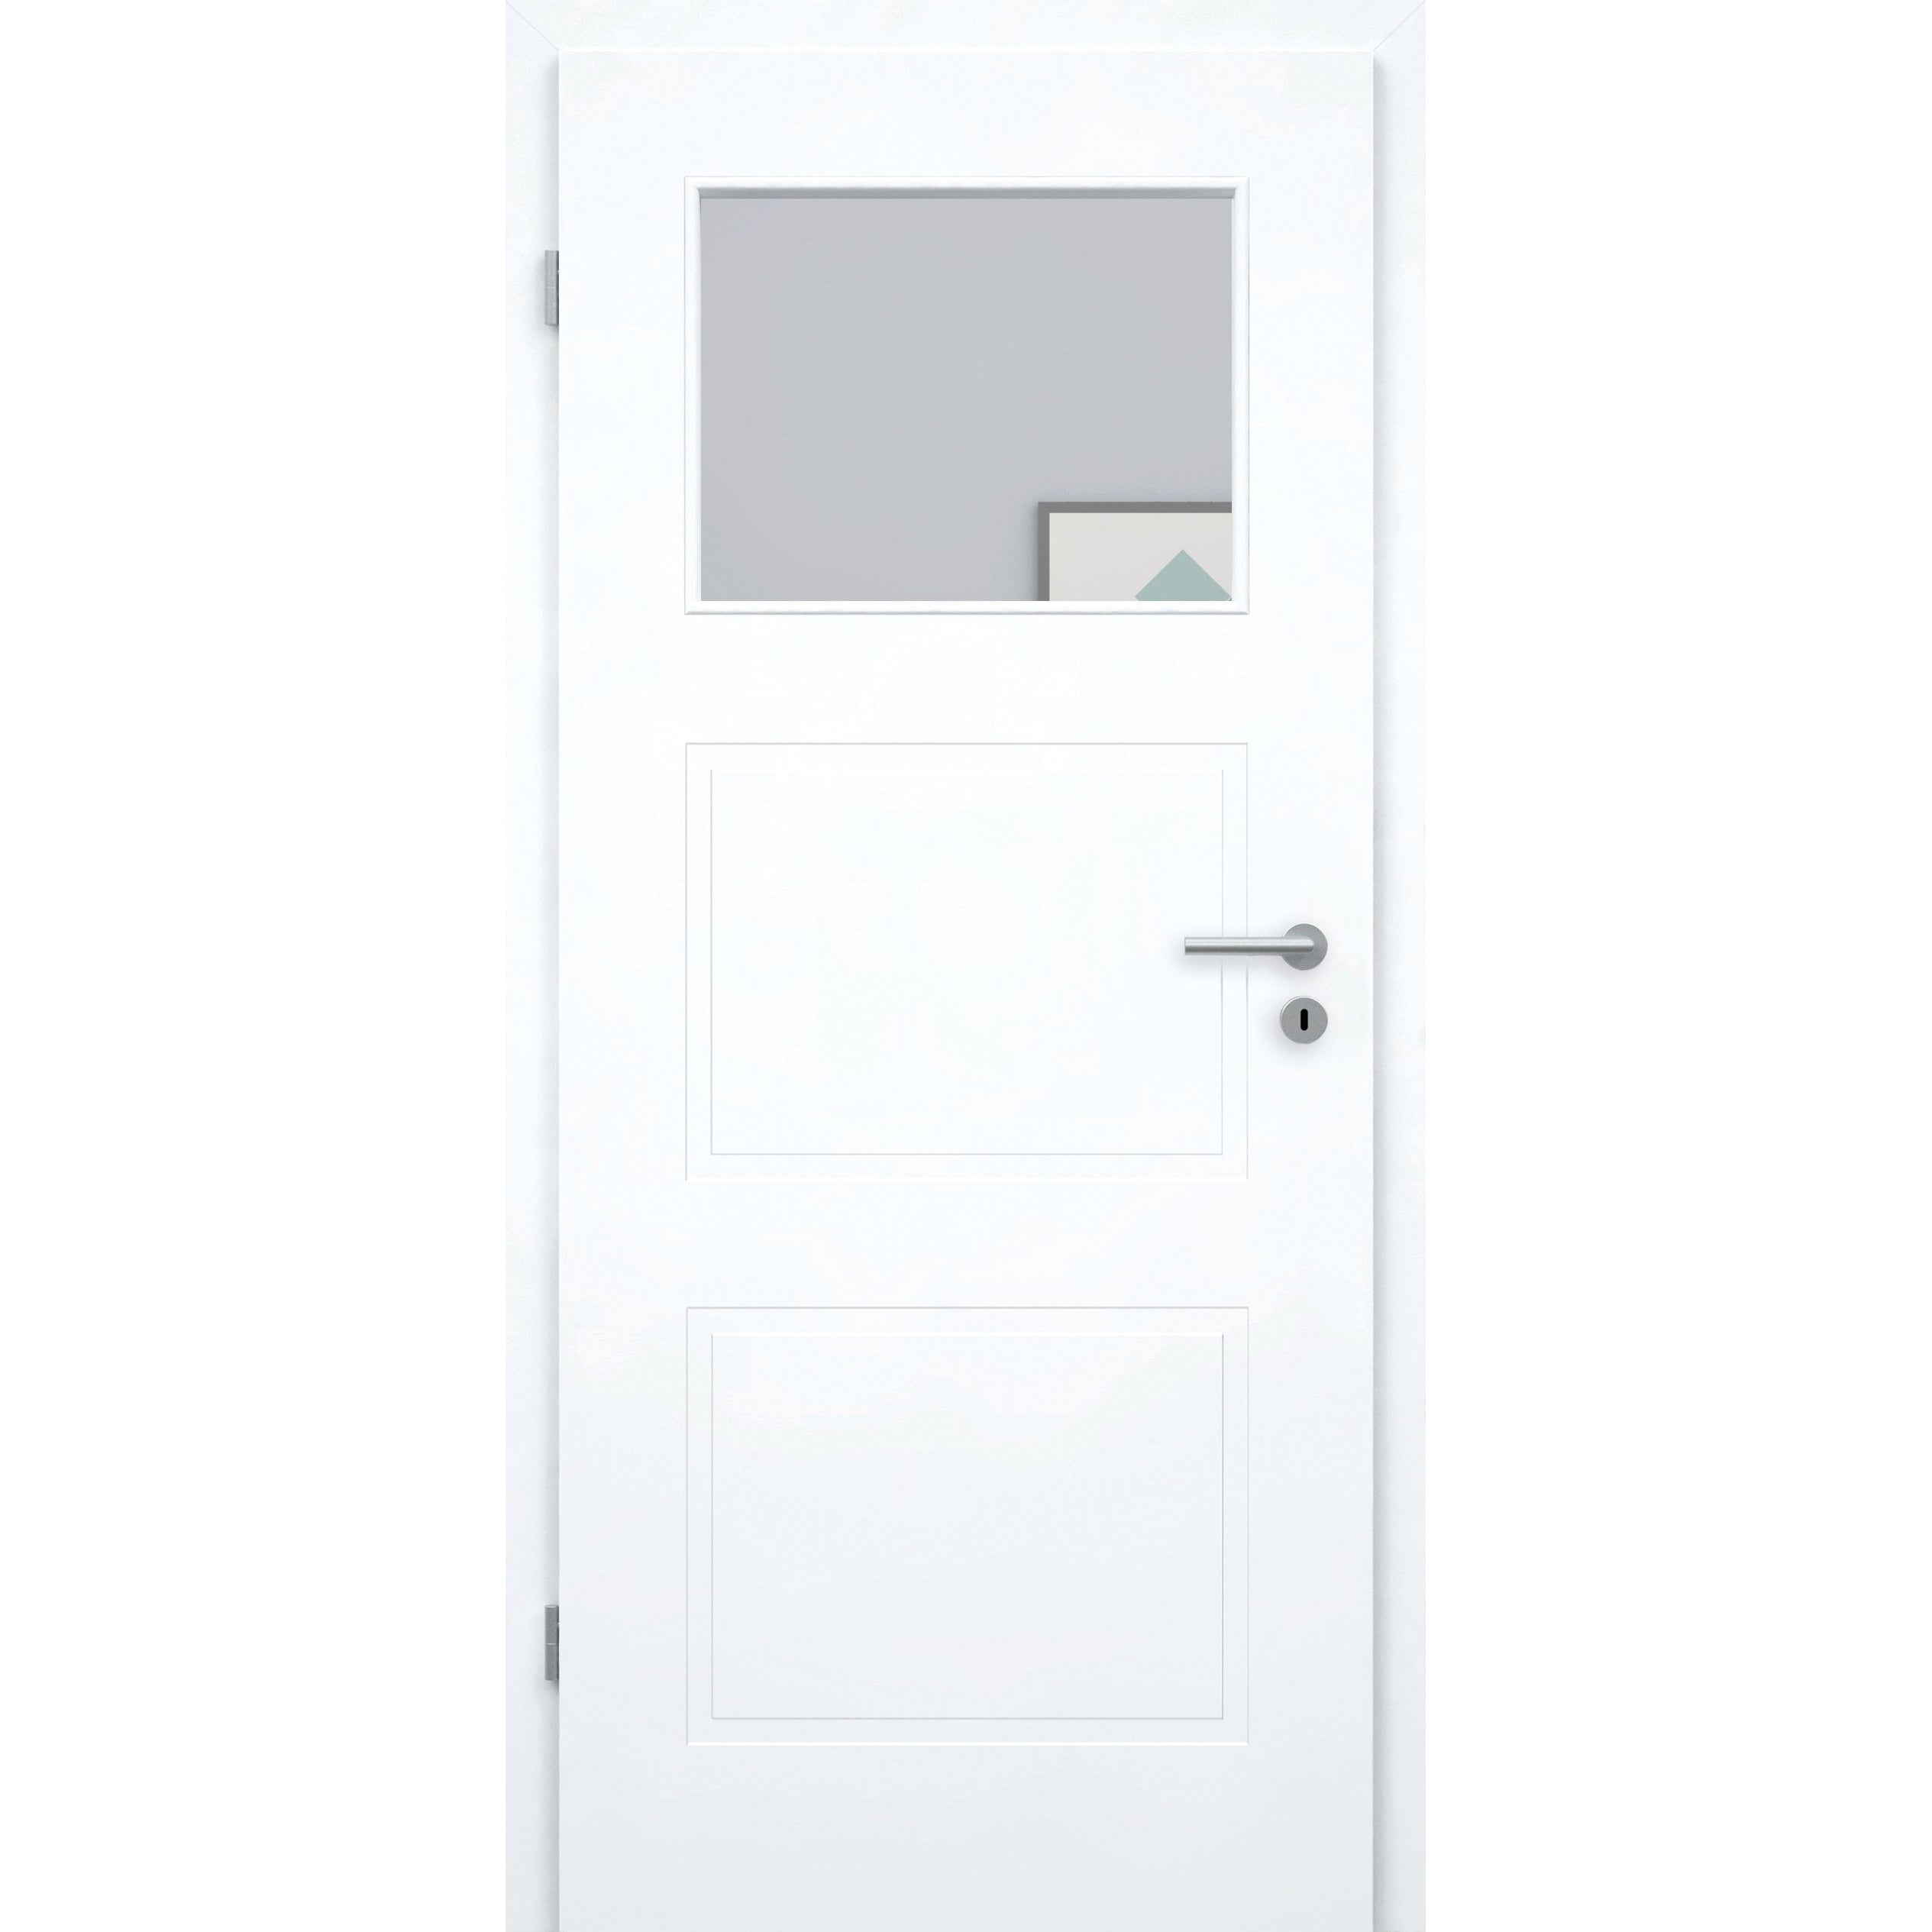 Zimmertür mit Lichtausschnitt brillant-weiß 3 Kassetten Designkante - Modell Stiltür M33LA1